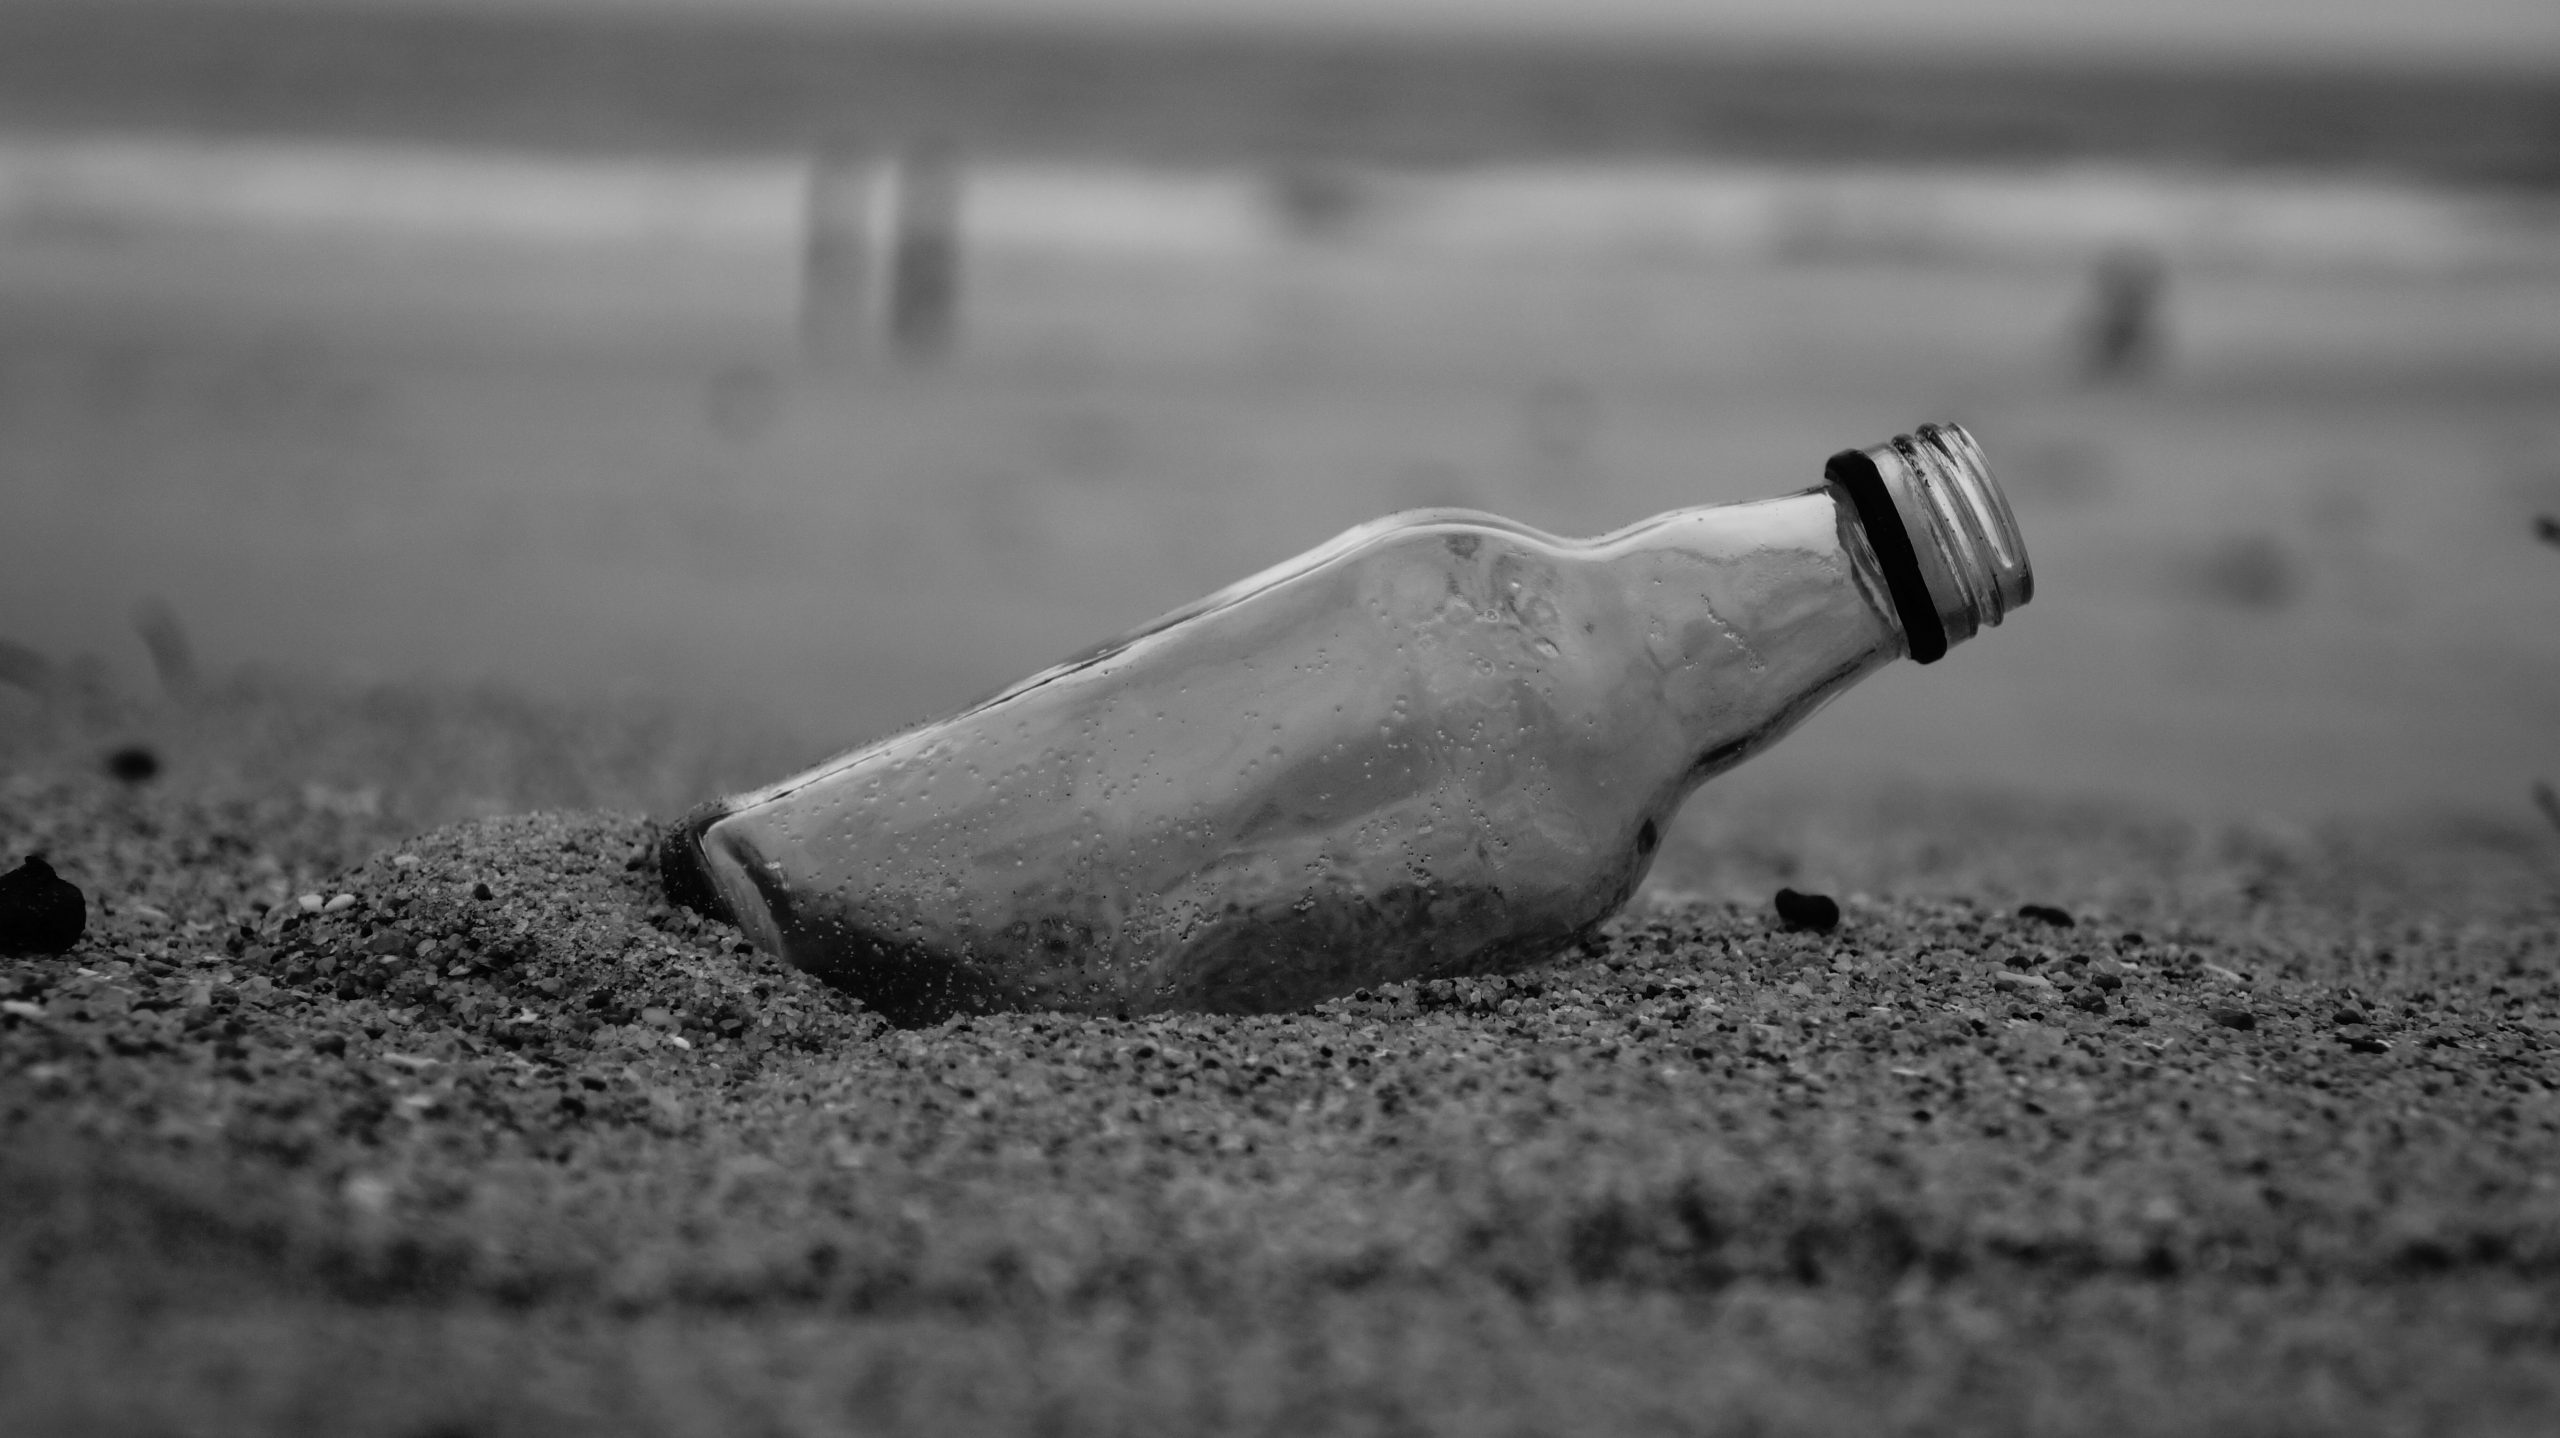 A glass bottle on beach sand